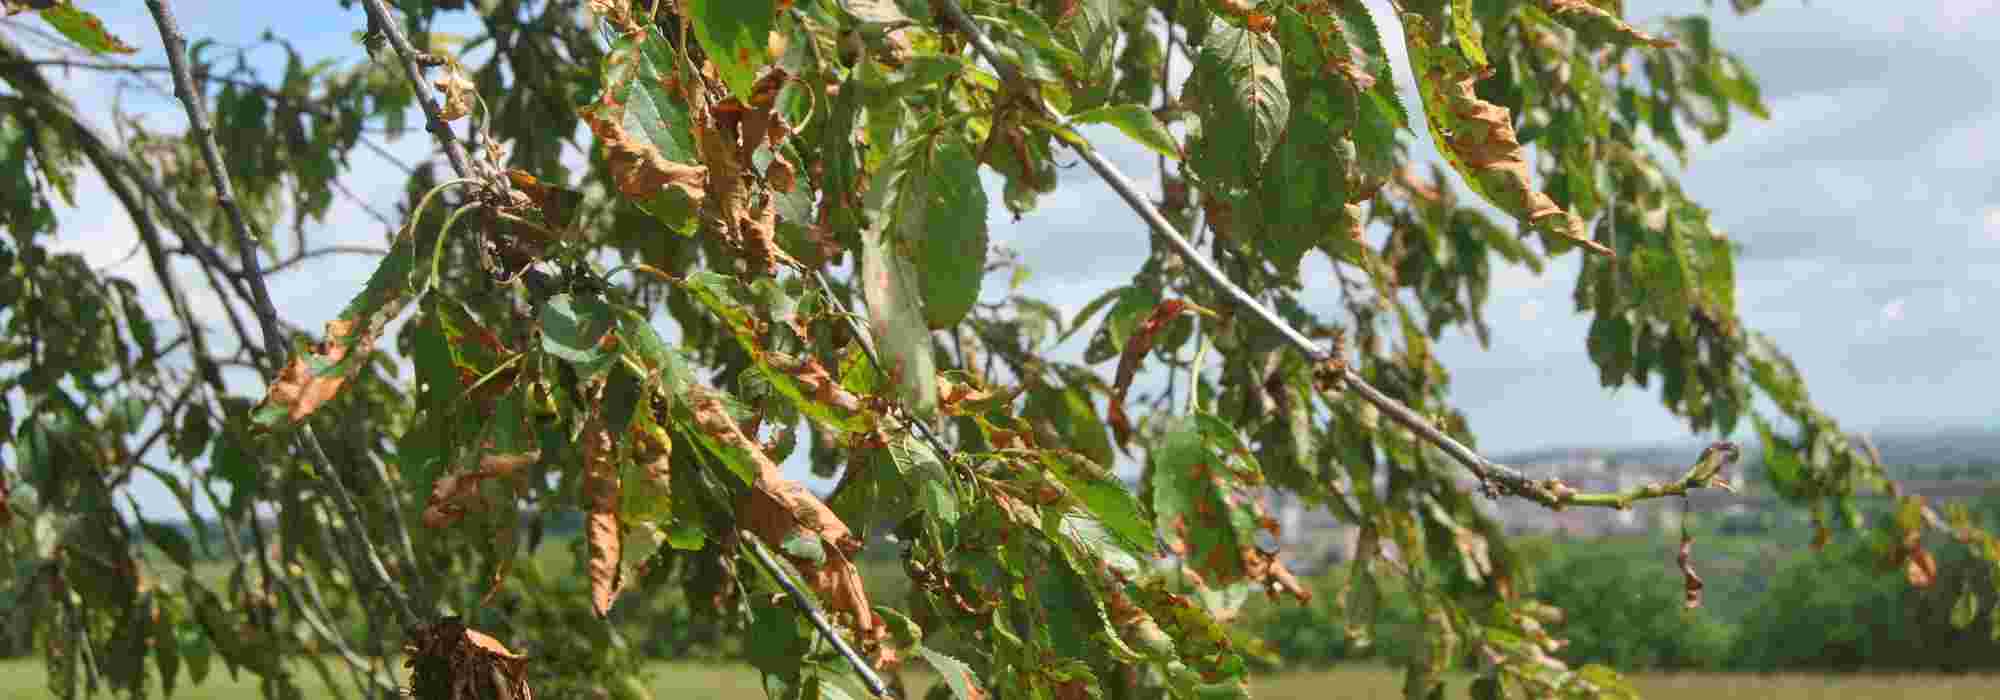 Le Coryneum ou Criblure des fruitiers à noyaux